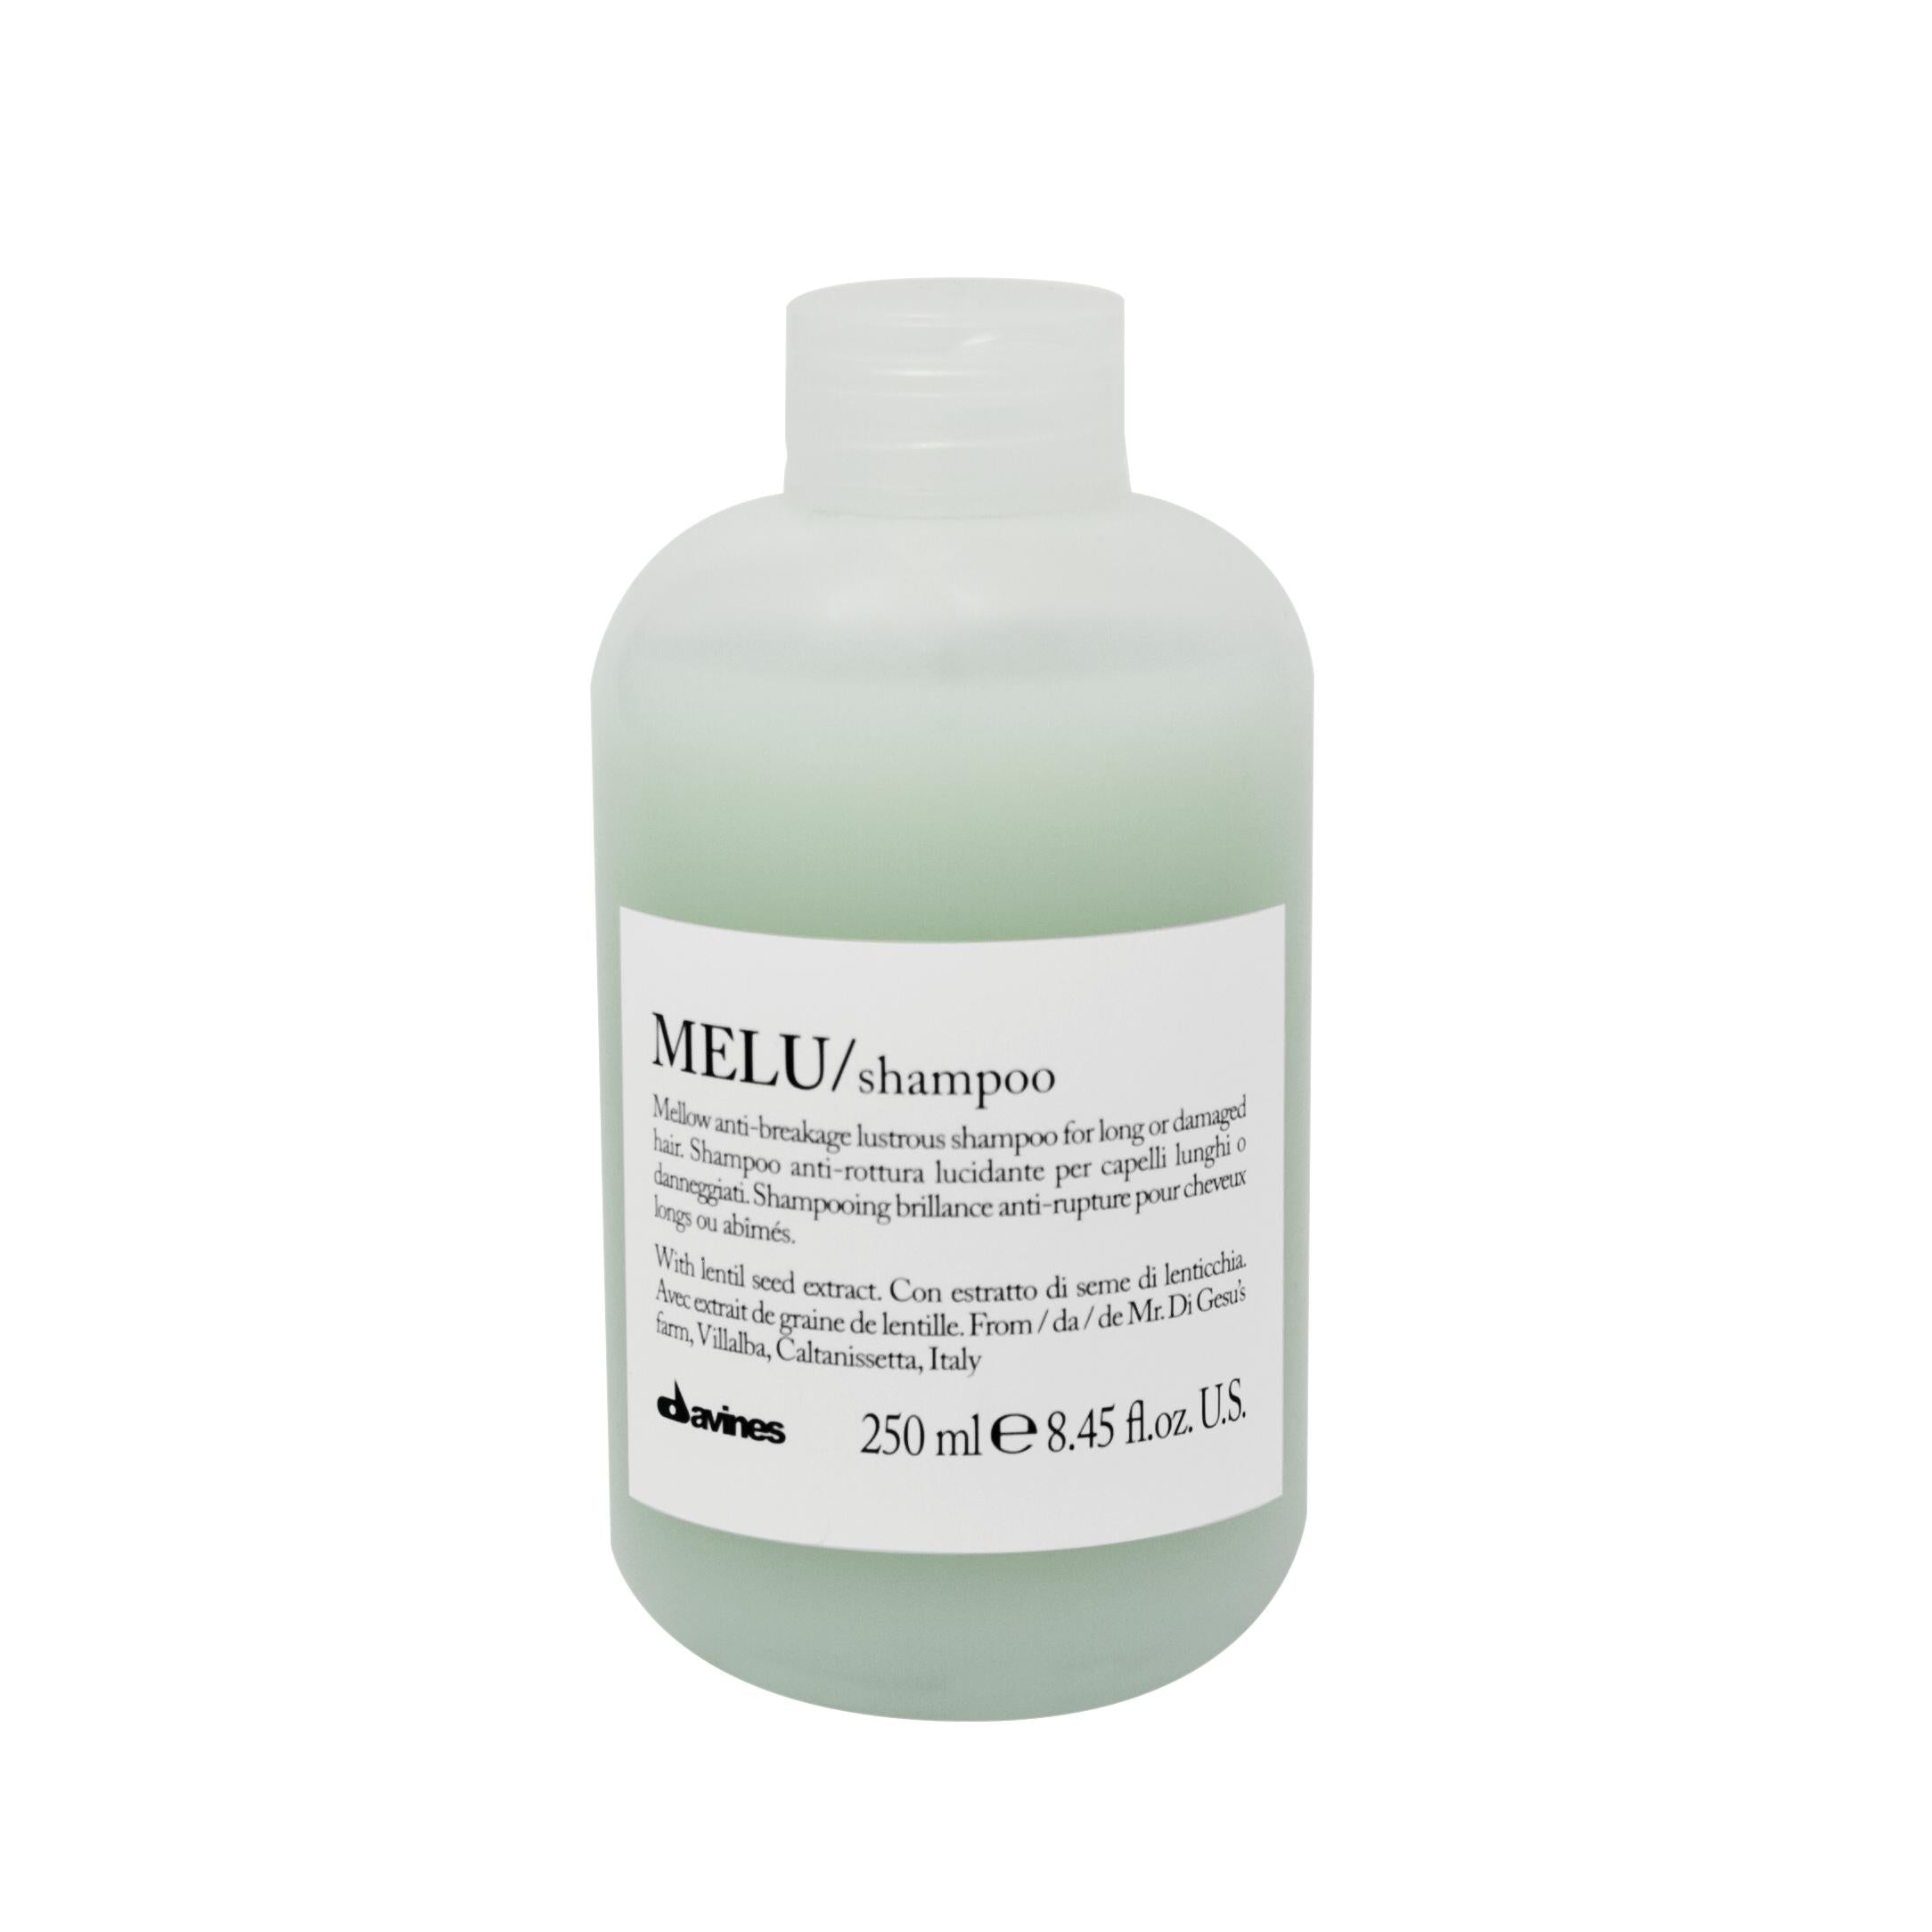 MELU Shampoo 250ml-Shampoo-Luxury Haircare Company